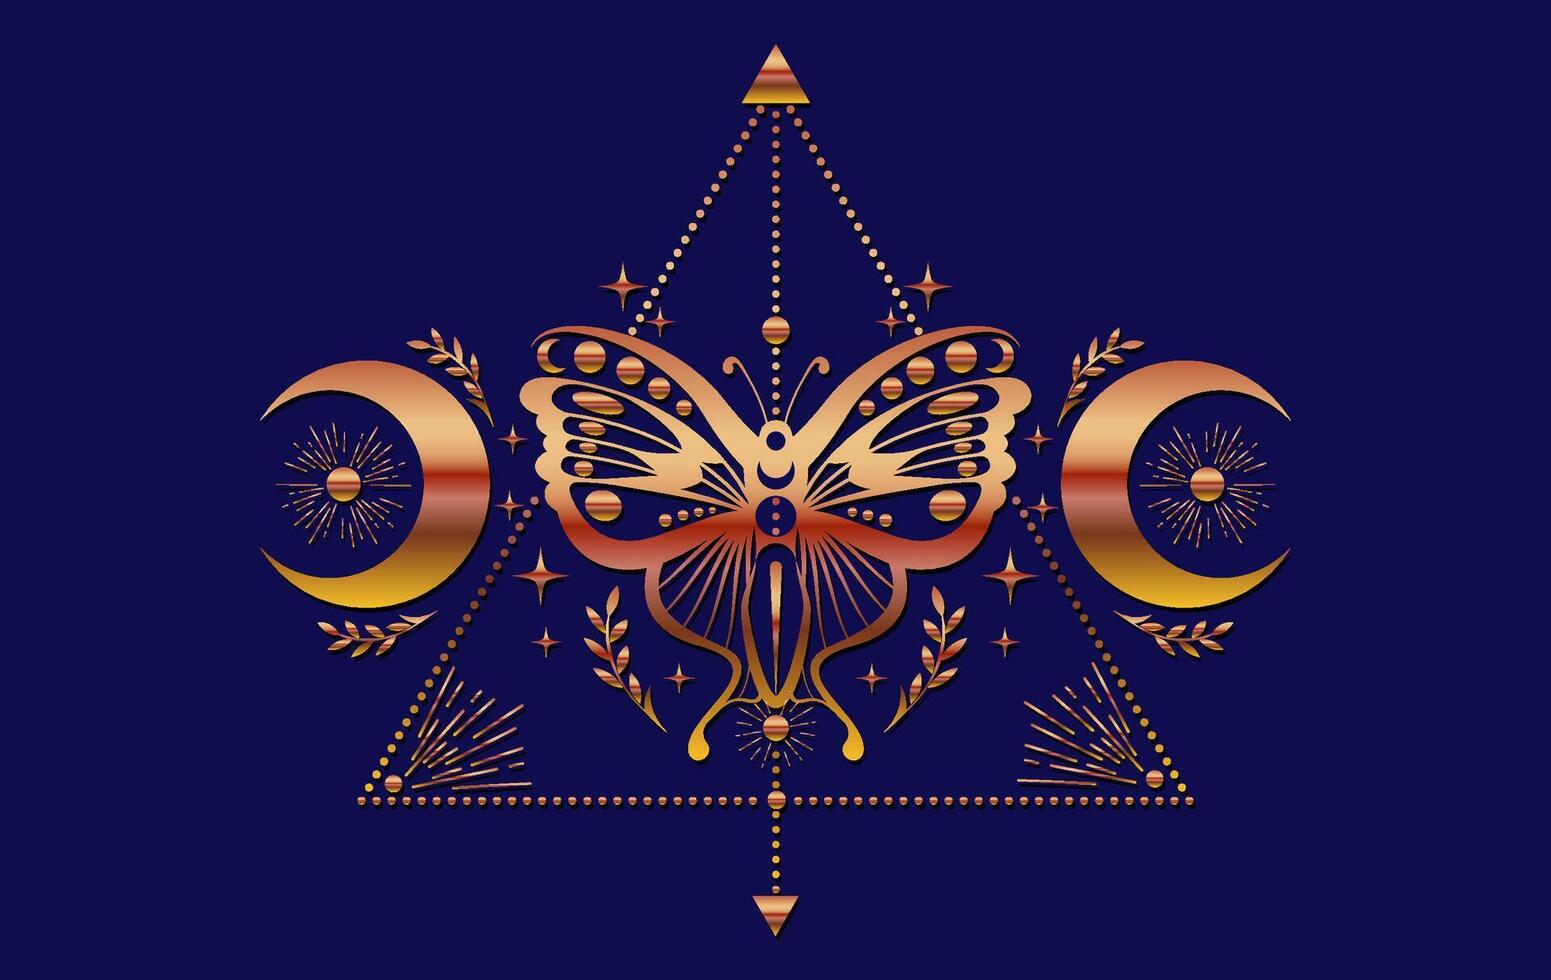 Mystiker Gold Motte, Magie Schmetterling und Halbmond Mond, heilig Symbole zum Hexerei, Okkulte, Esoterik, drucken, Poster. bunt heidnisch magisch Siegel isoliert auf Blau Hintergrund vektor